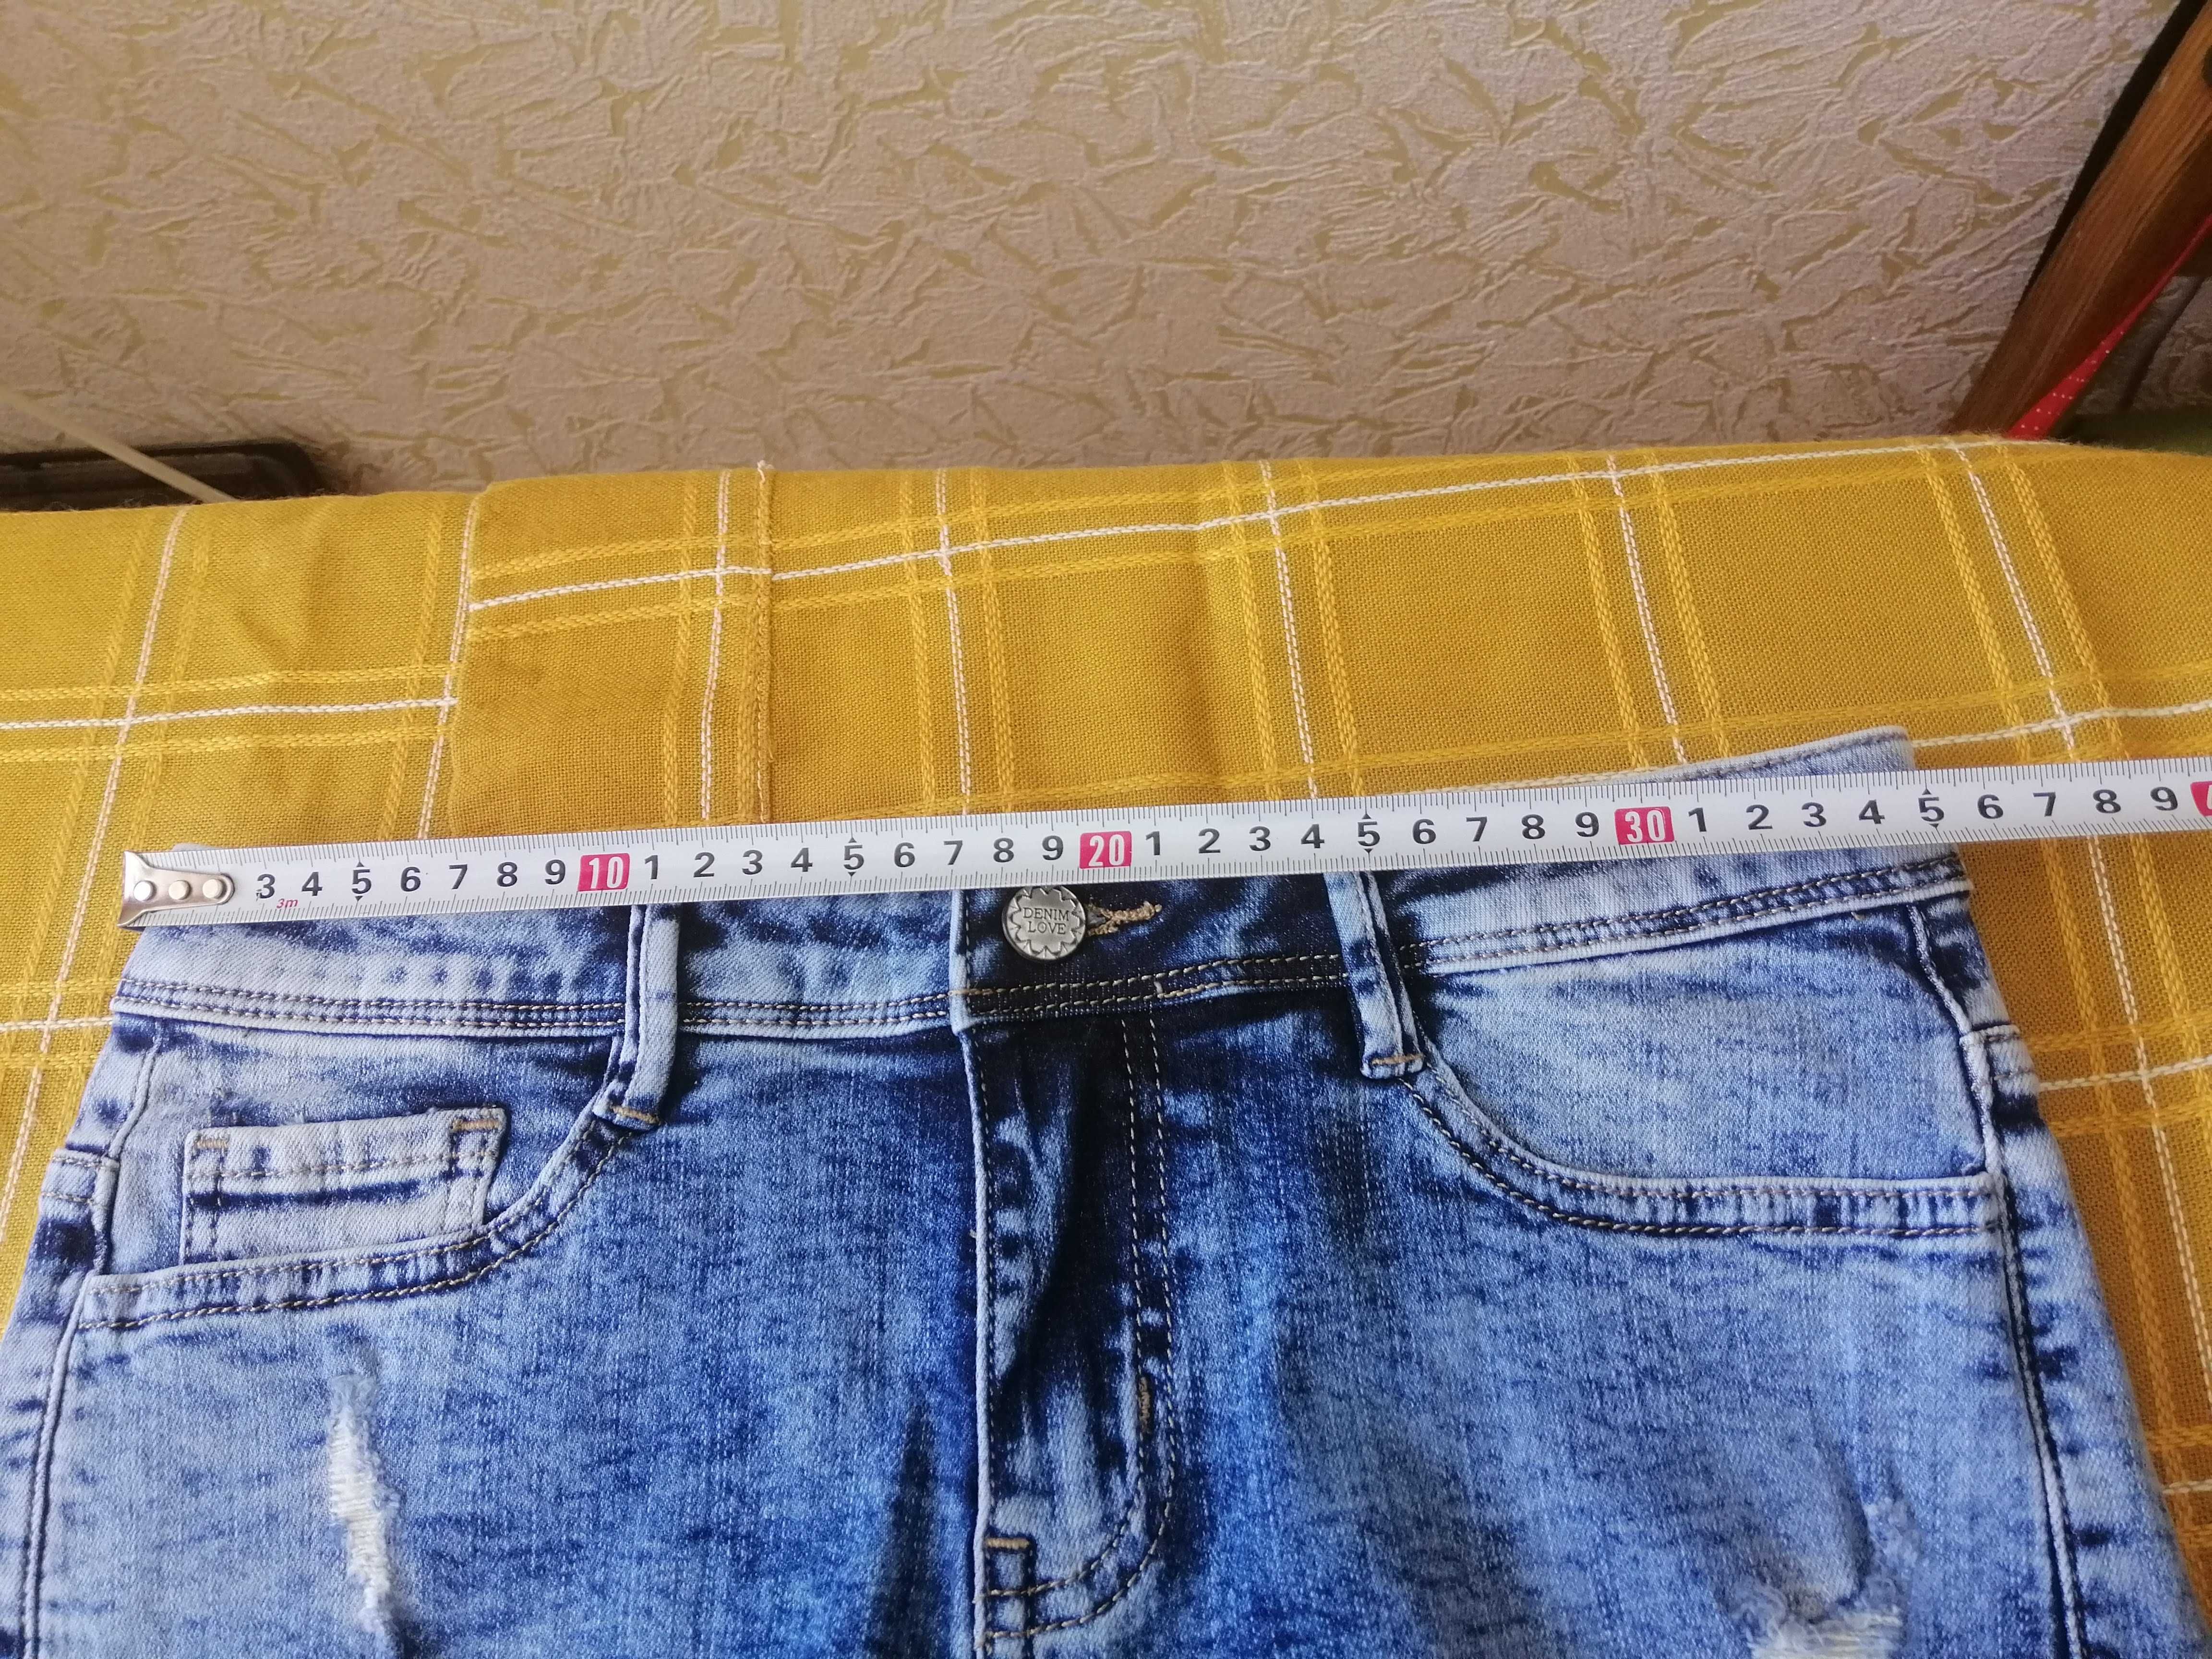 Новые джинсовые шорты для девочки,размер 36.